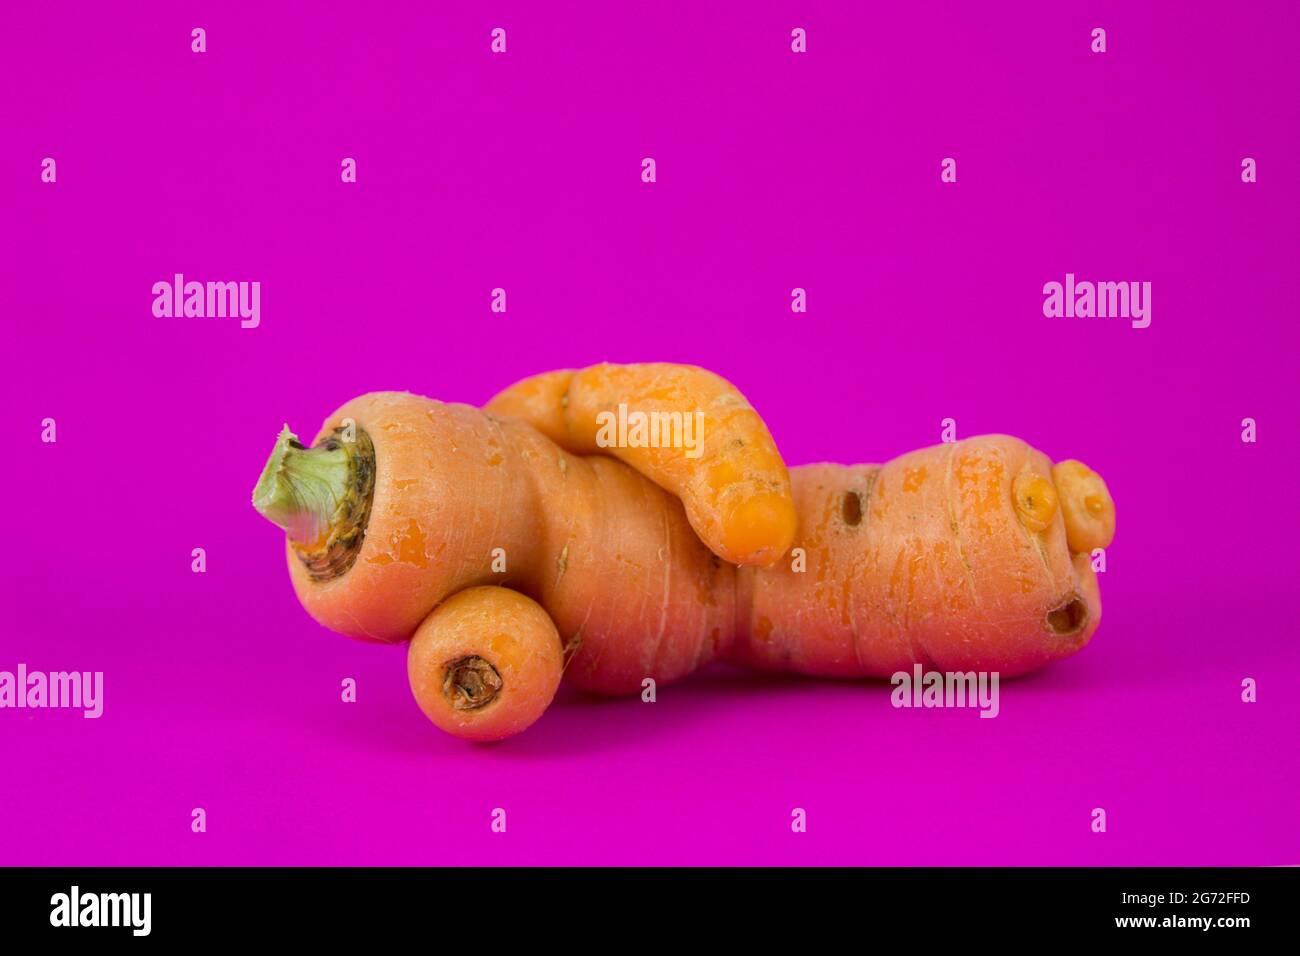 Isolata carota divertente che assomiglia a un uomo che riposa su un vibrante sfondo rosa Foto Stock